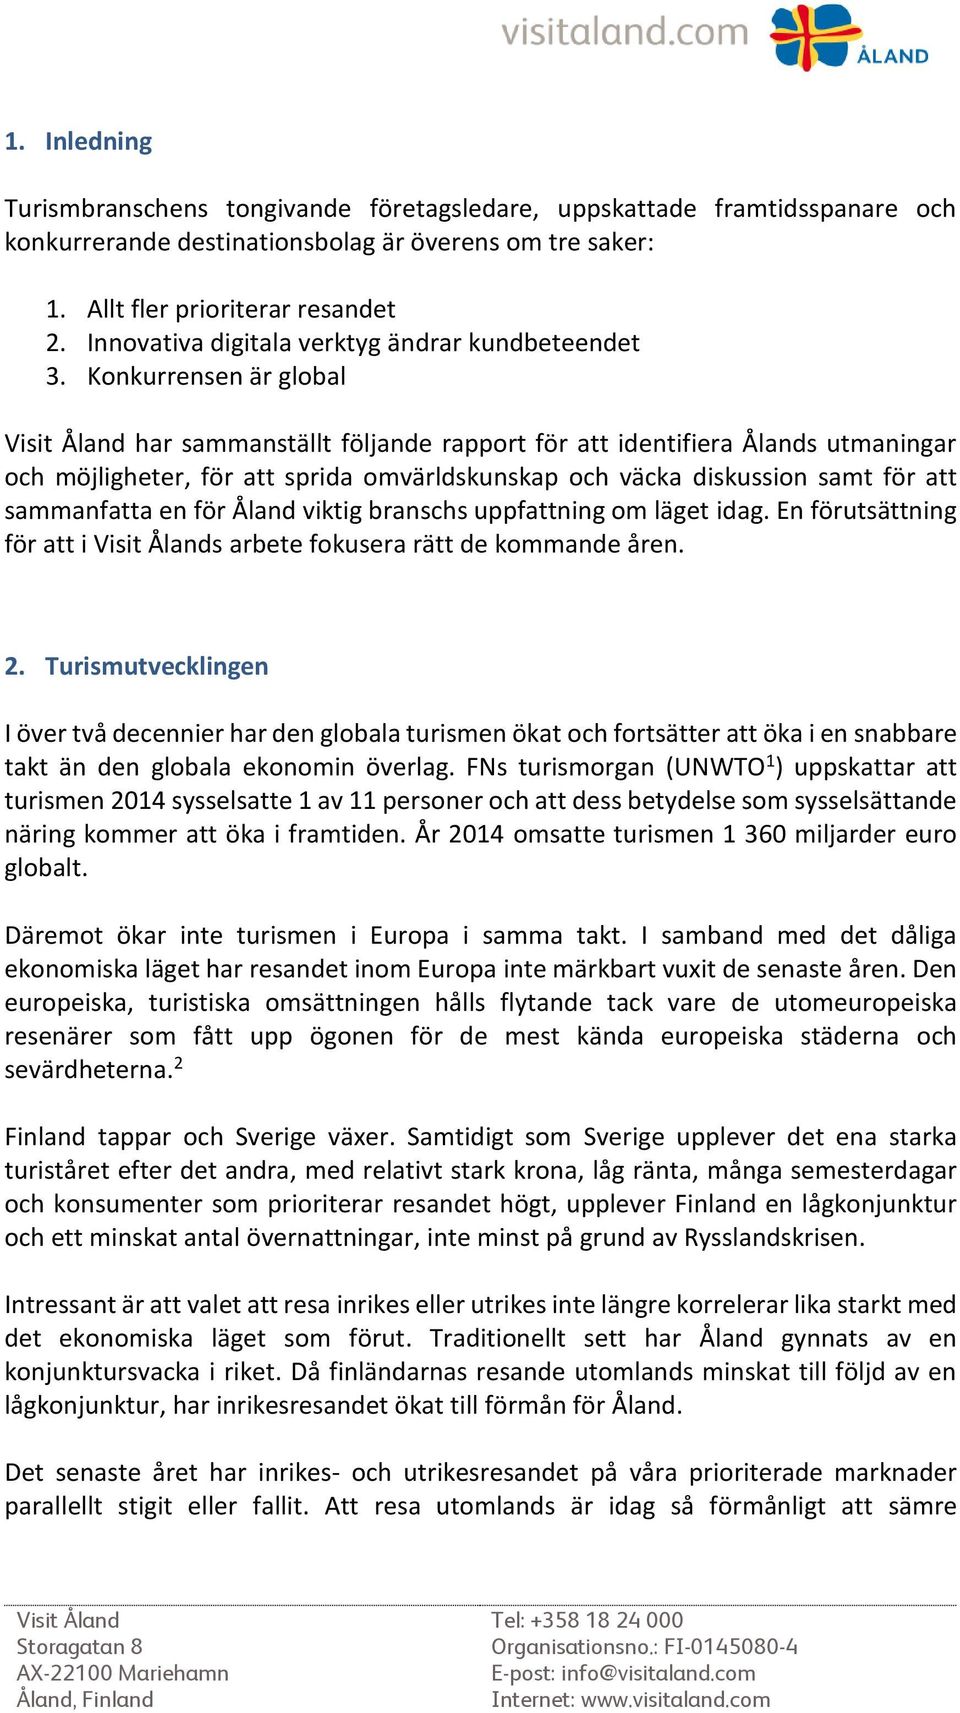 Konkurrensen är global har sammanställt följande rapport för att identifiera Ålands utmaningar och möjligheter, för att sprida omvärldskunskap och väcka diskussion samt för att sammanfatta en för